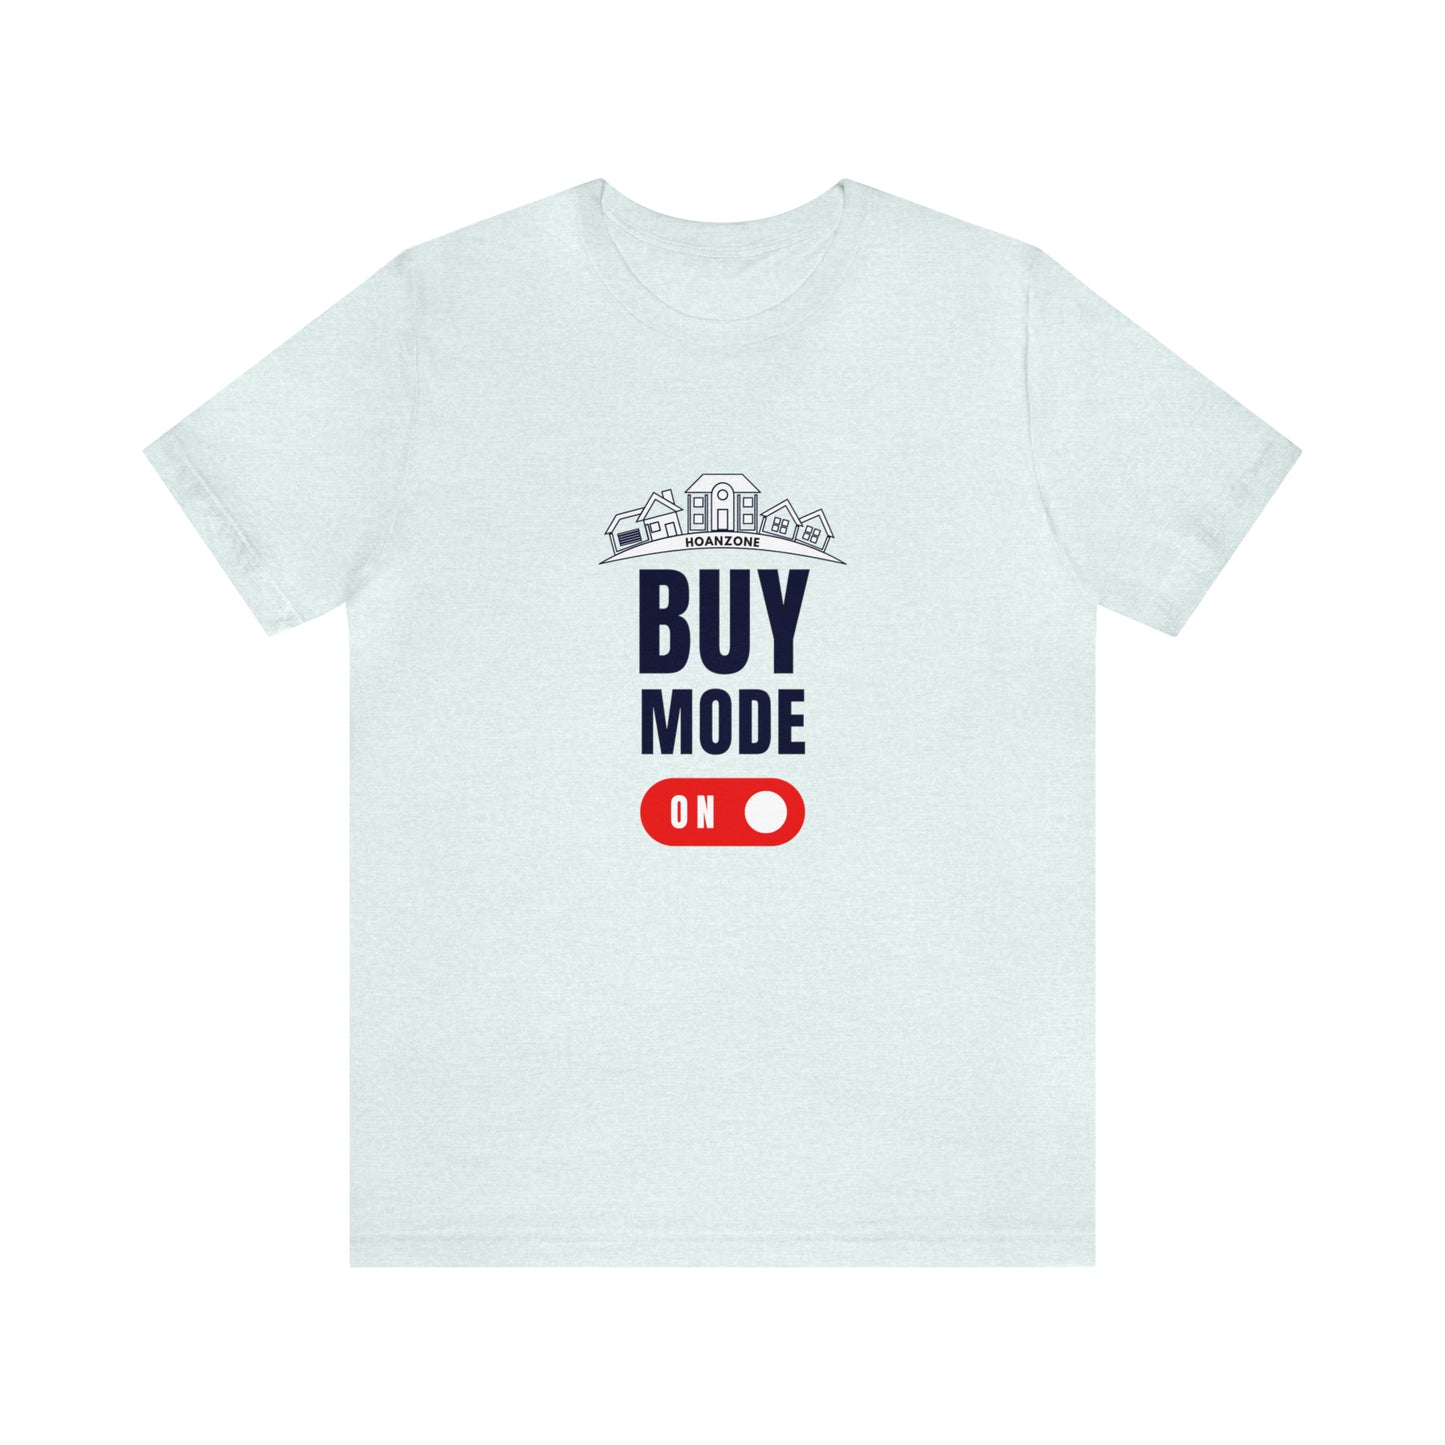 Buy Mode... ON!